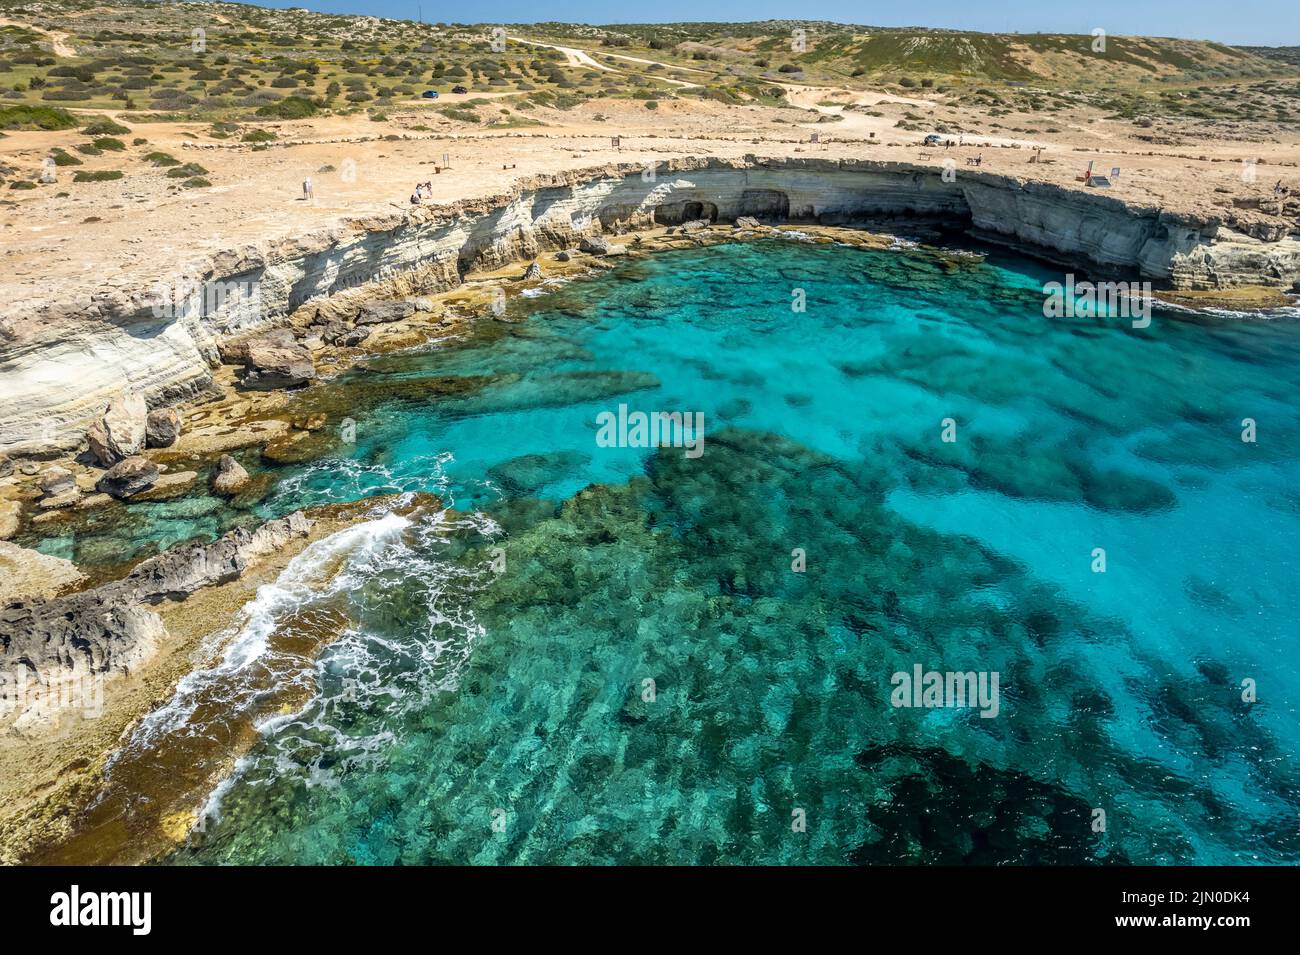 Grottes marines, Küste mit klippen und Höhlen BEI Agia Napa, Zypern, Europa | Grottes marines et falaises sur la côte escarpée près d'Ayia Napa, Chypre, Europe Banque D'Images